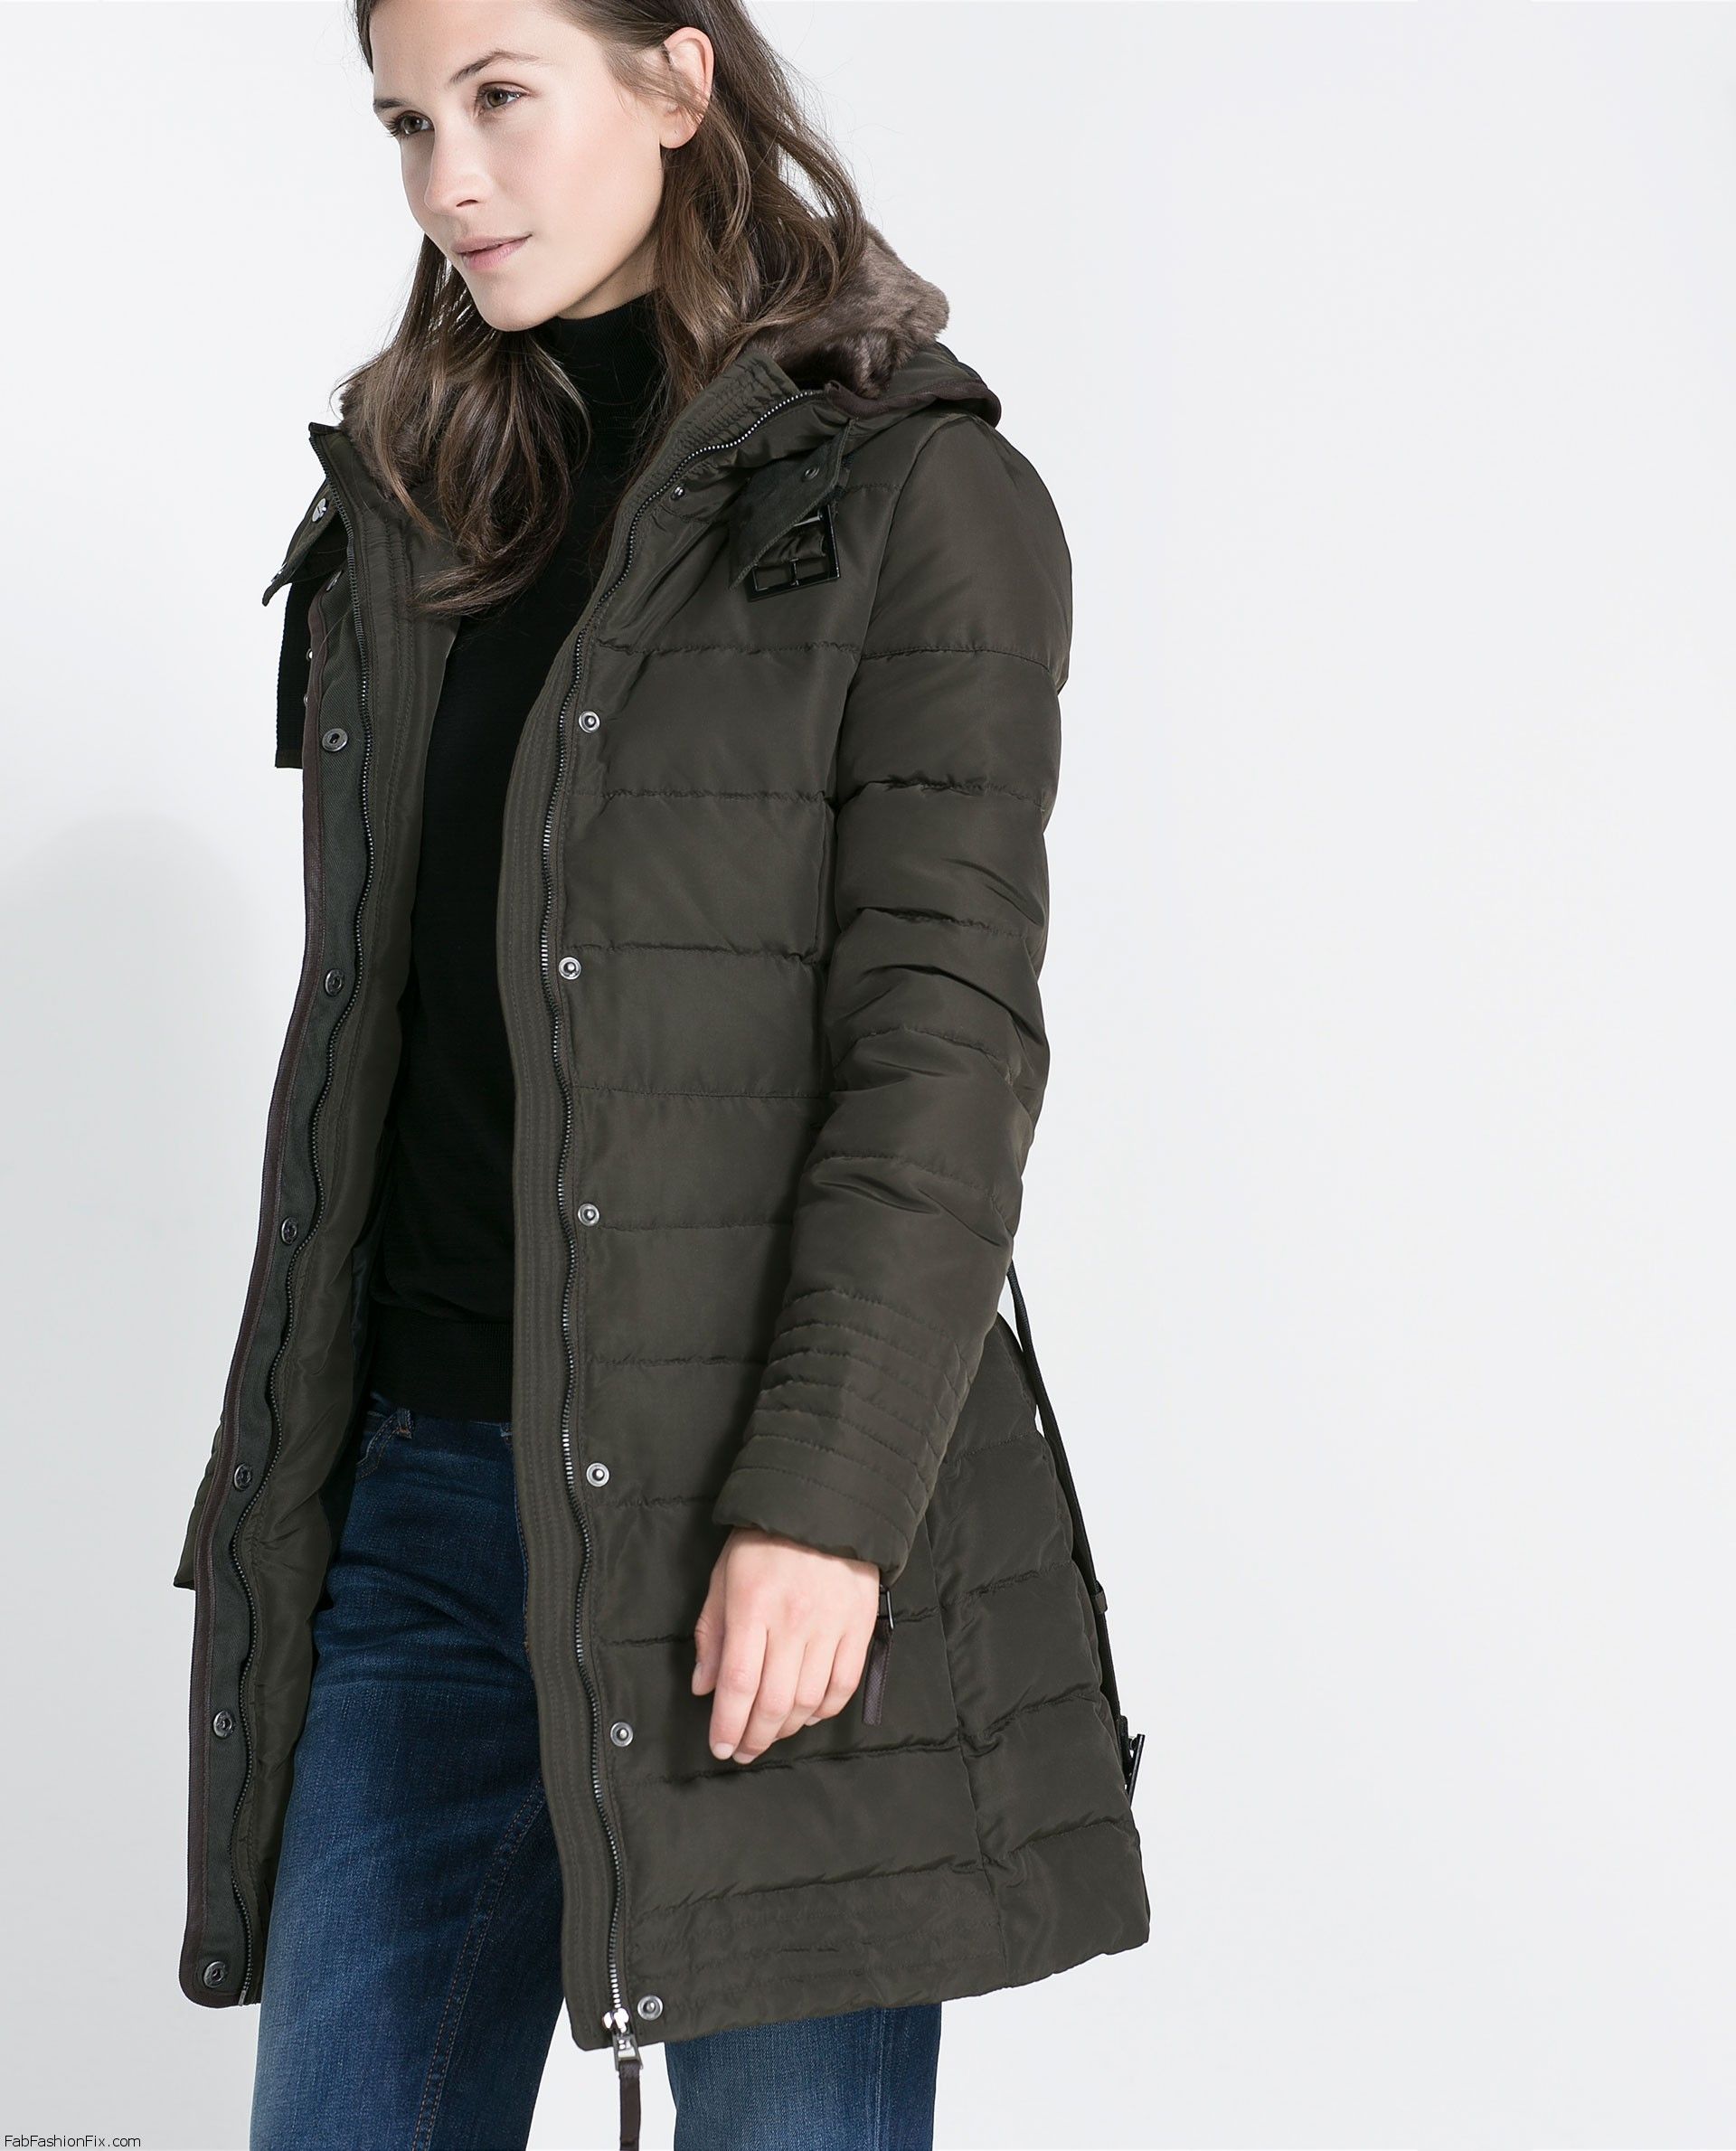 Zara basic coat